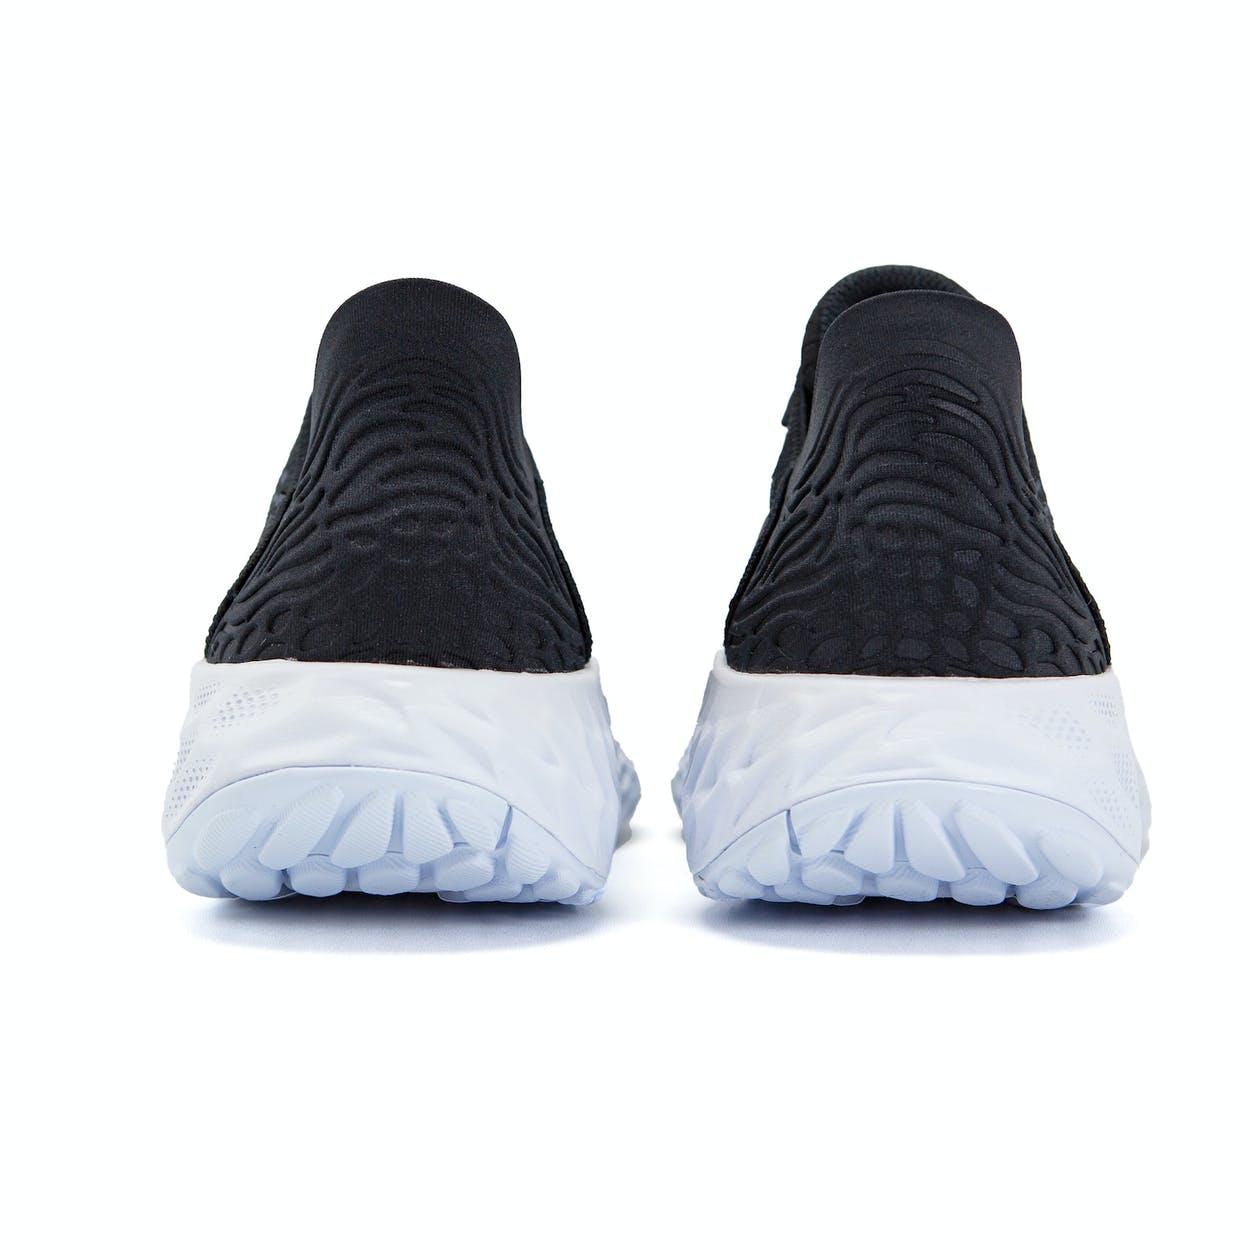 “New Balance Fresh Foam 1080v10” รองเท้าวิ่งที่มีความหนานุ่มสวมใส่สบายเท้าสุด ๆ 03